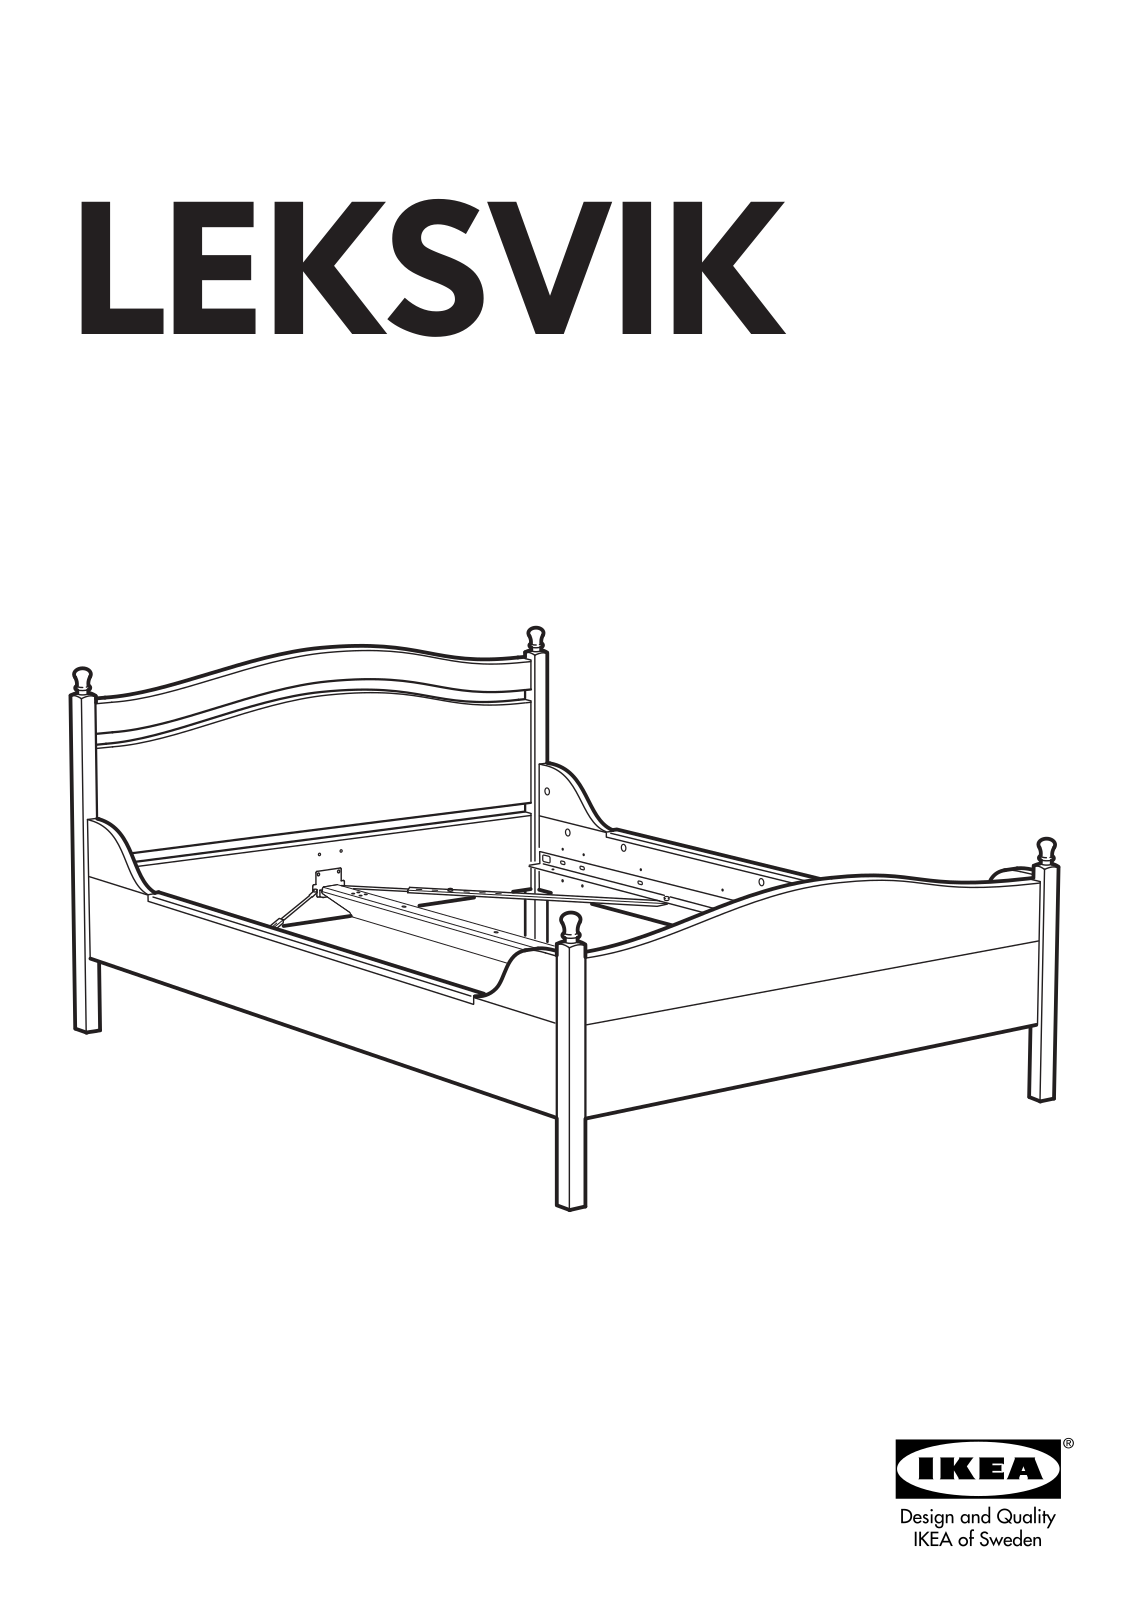 IKEA LEKSVIK BED FRAME QUEEN, LEKSVIK BED FRAME KING User Manual